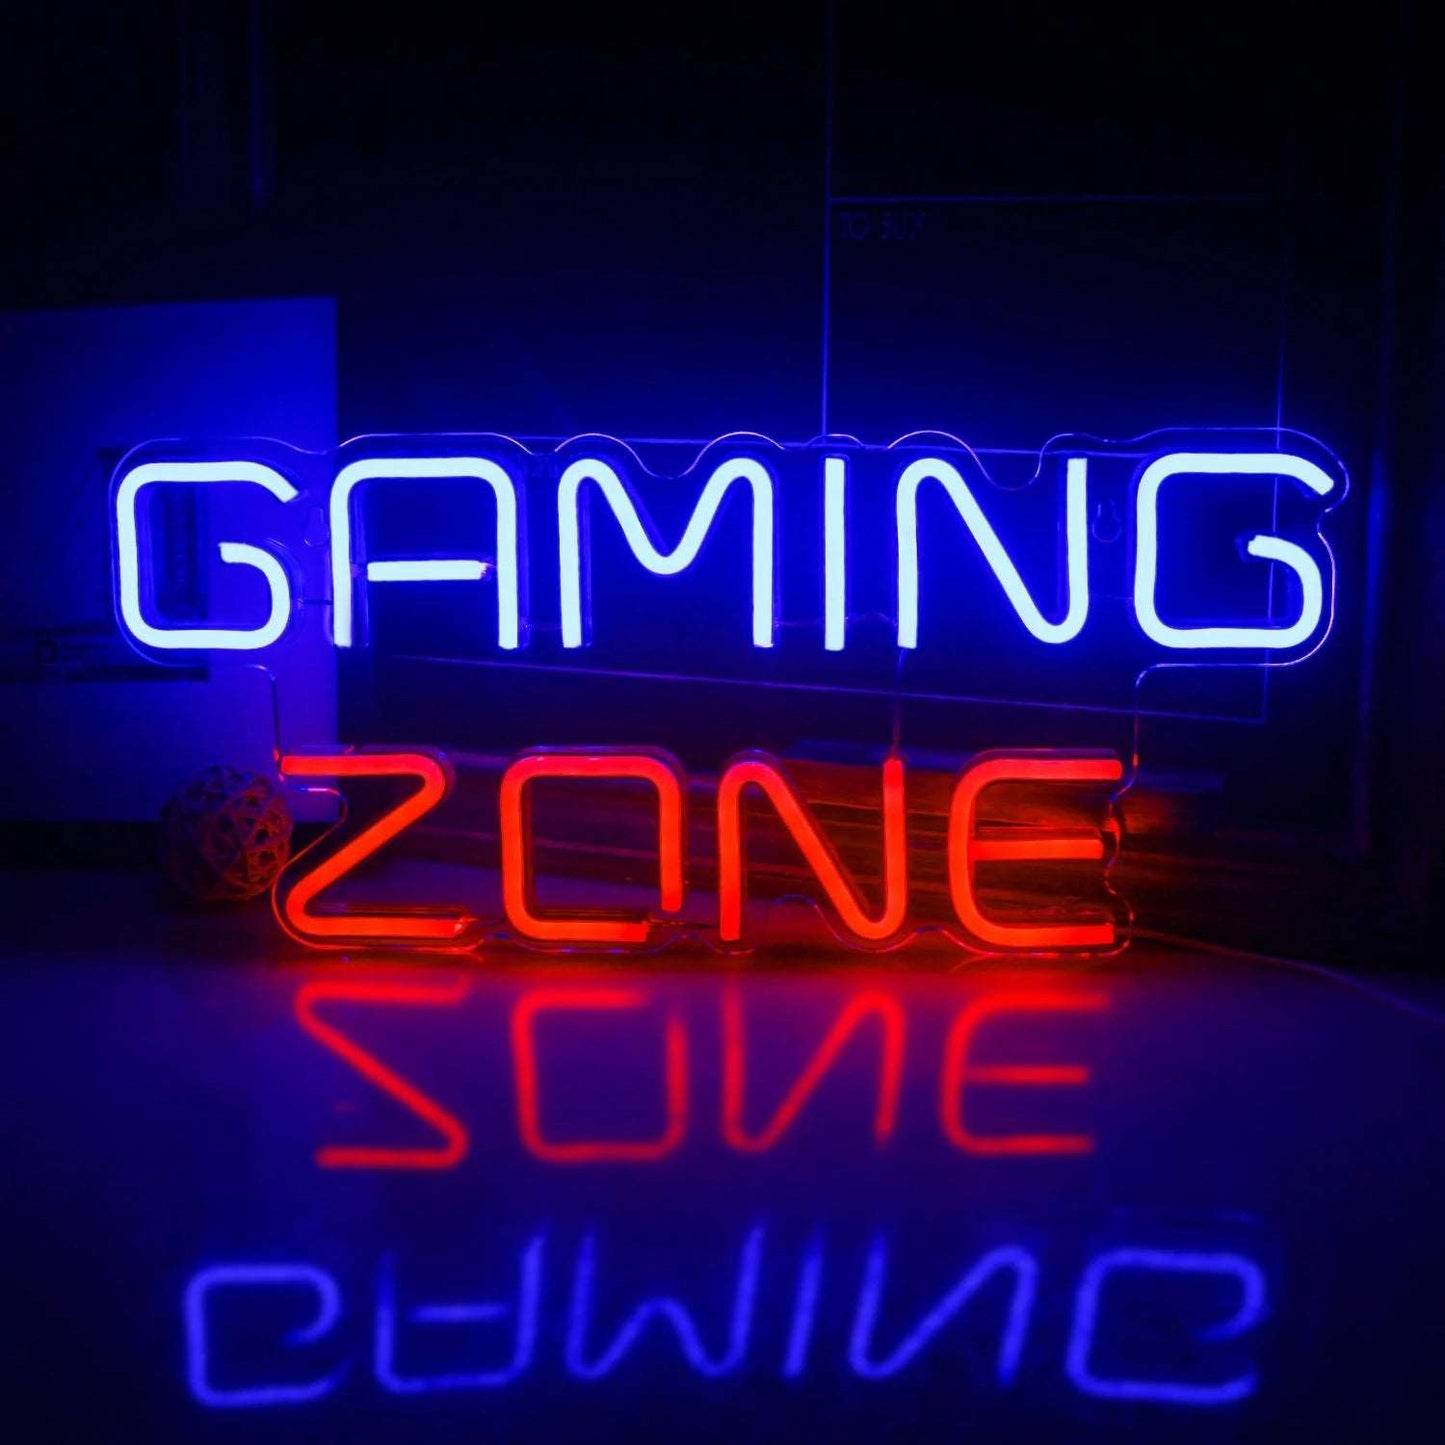 Gaming Zone Neon Leuchte